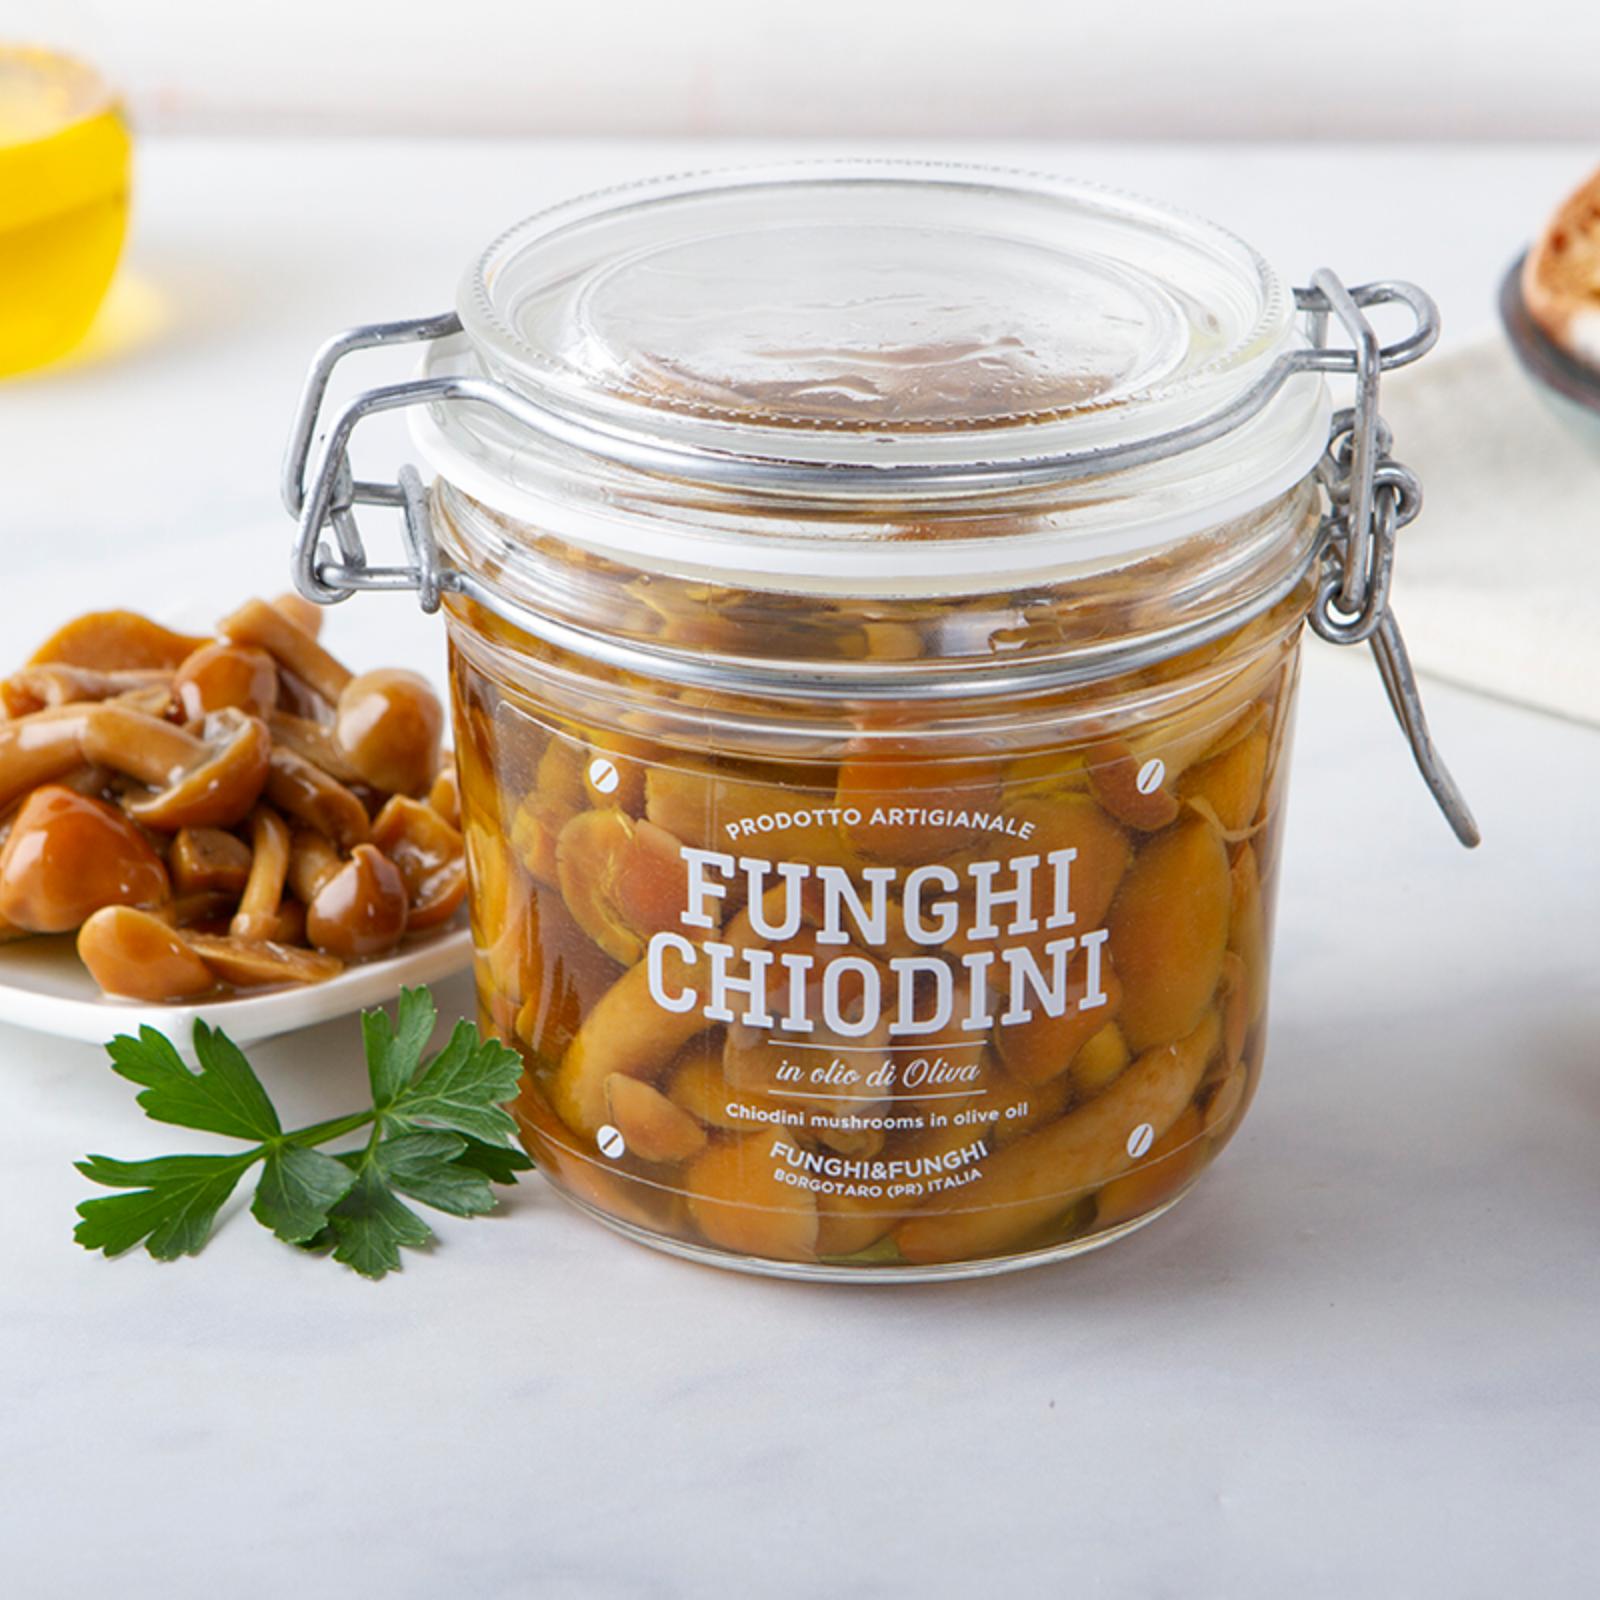 Funghi Chiodini in olio di oliva